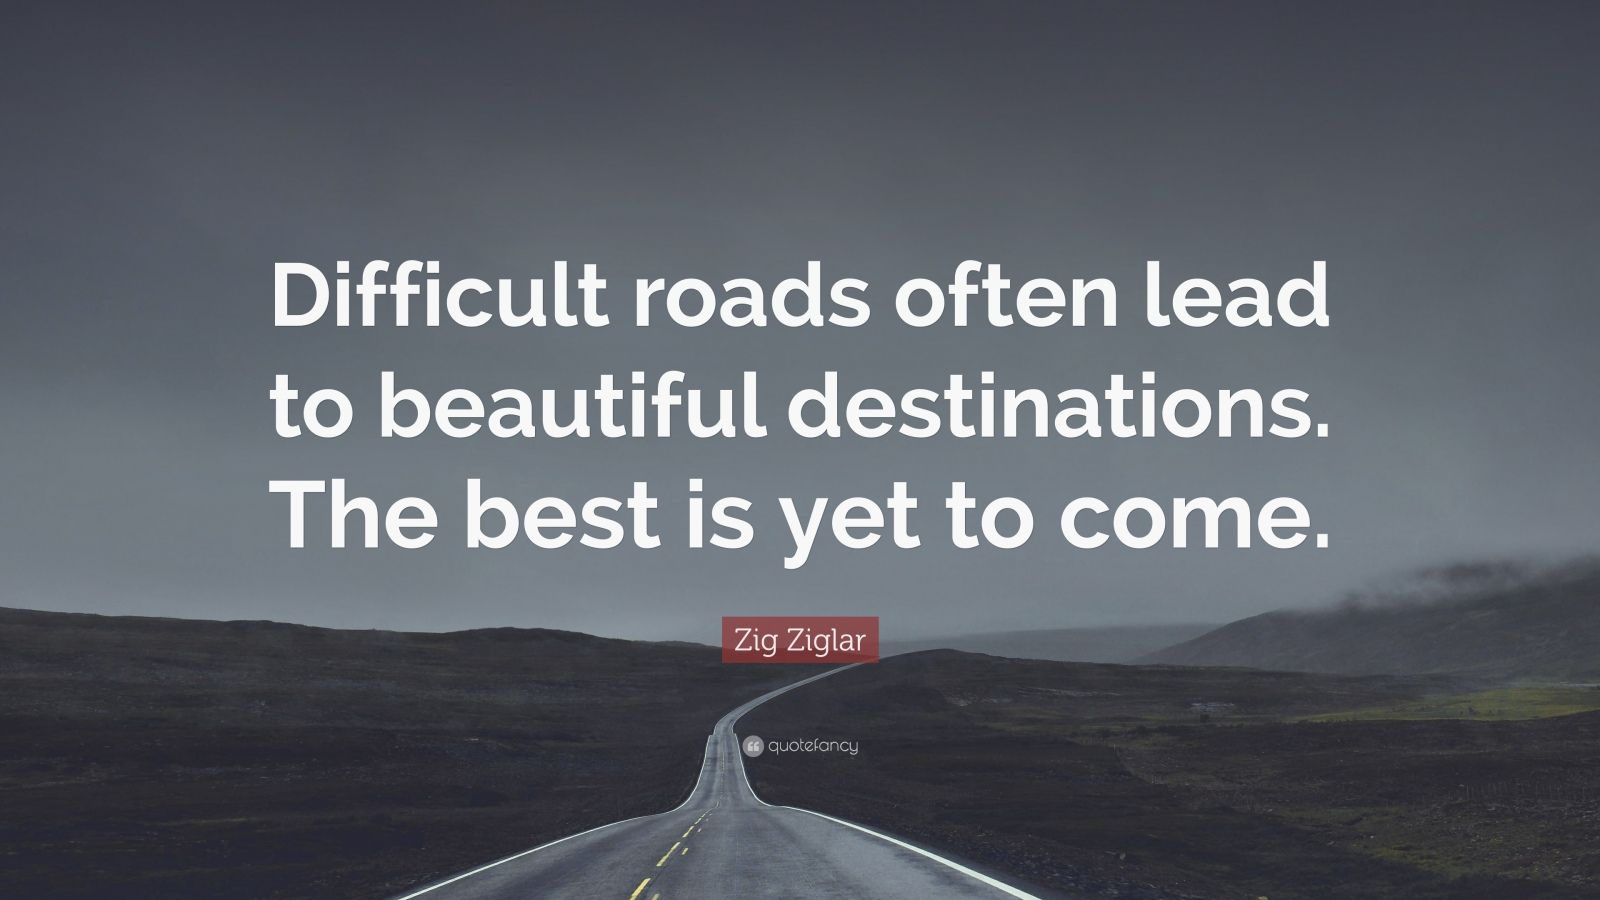 Zig Ziglar Quote “Difficult roads often lead to beautiful